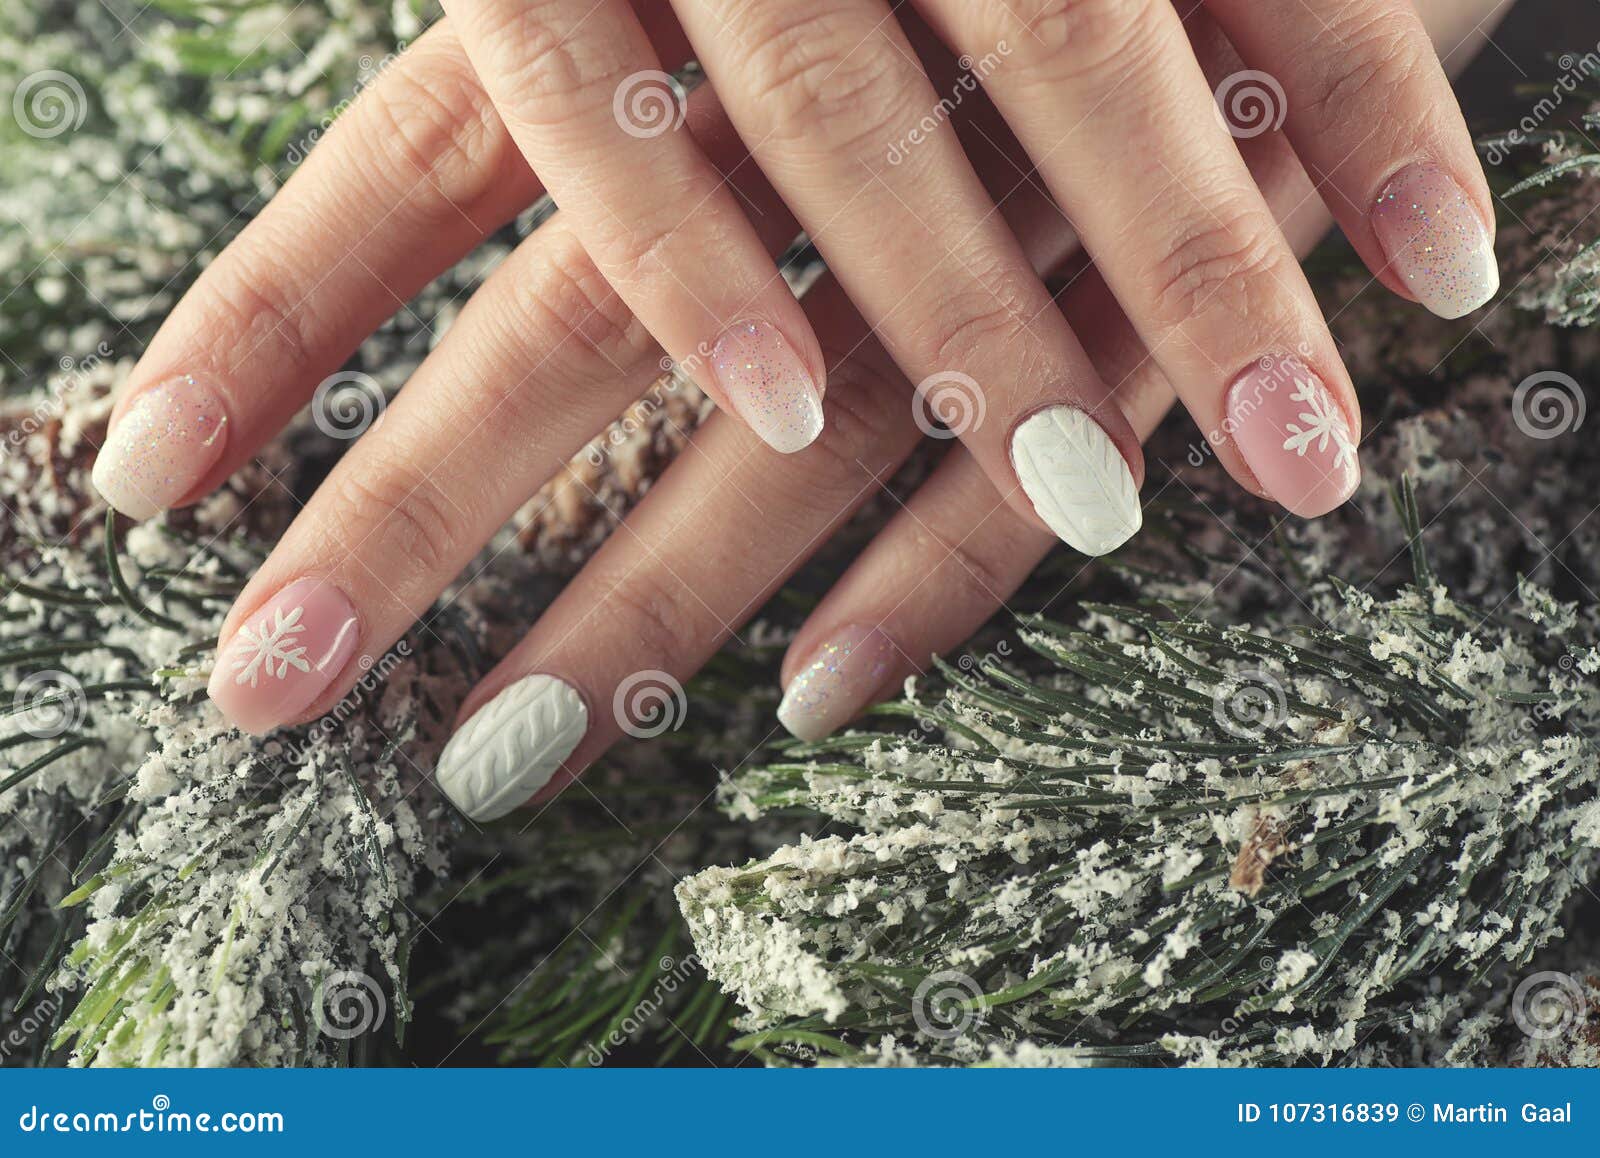 17 Bridal nail ideas for your wedding | Nail Polish Direct